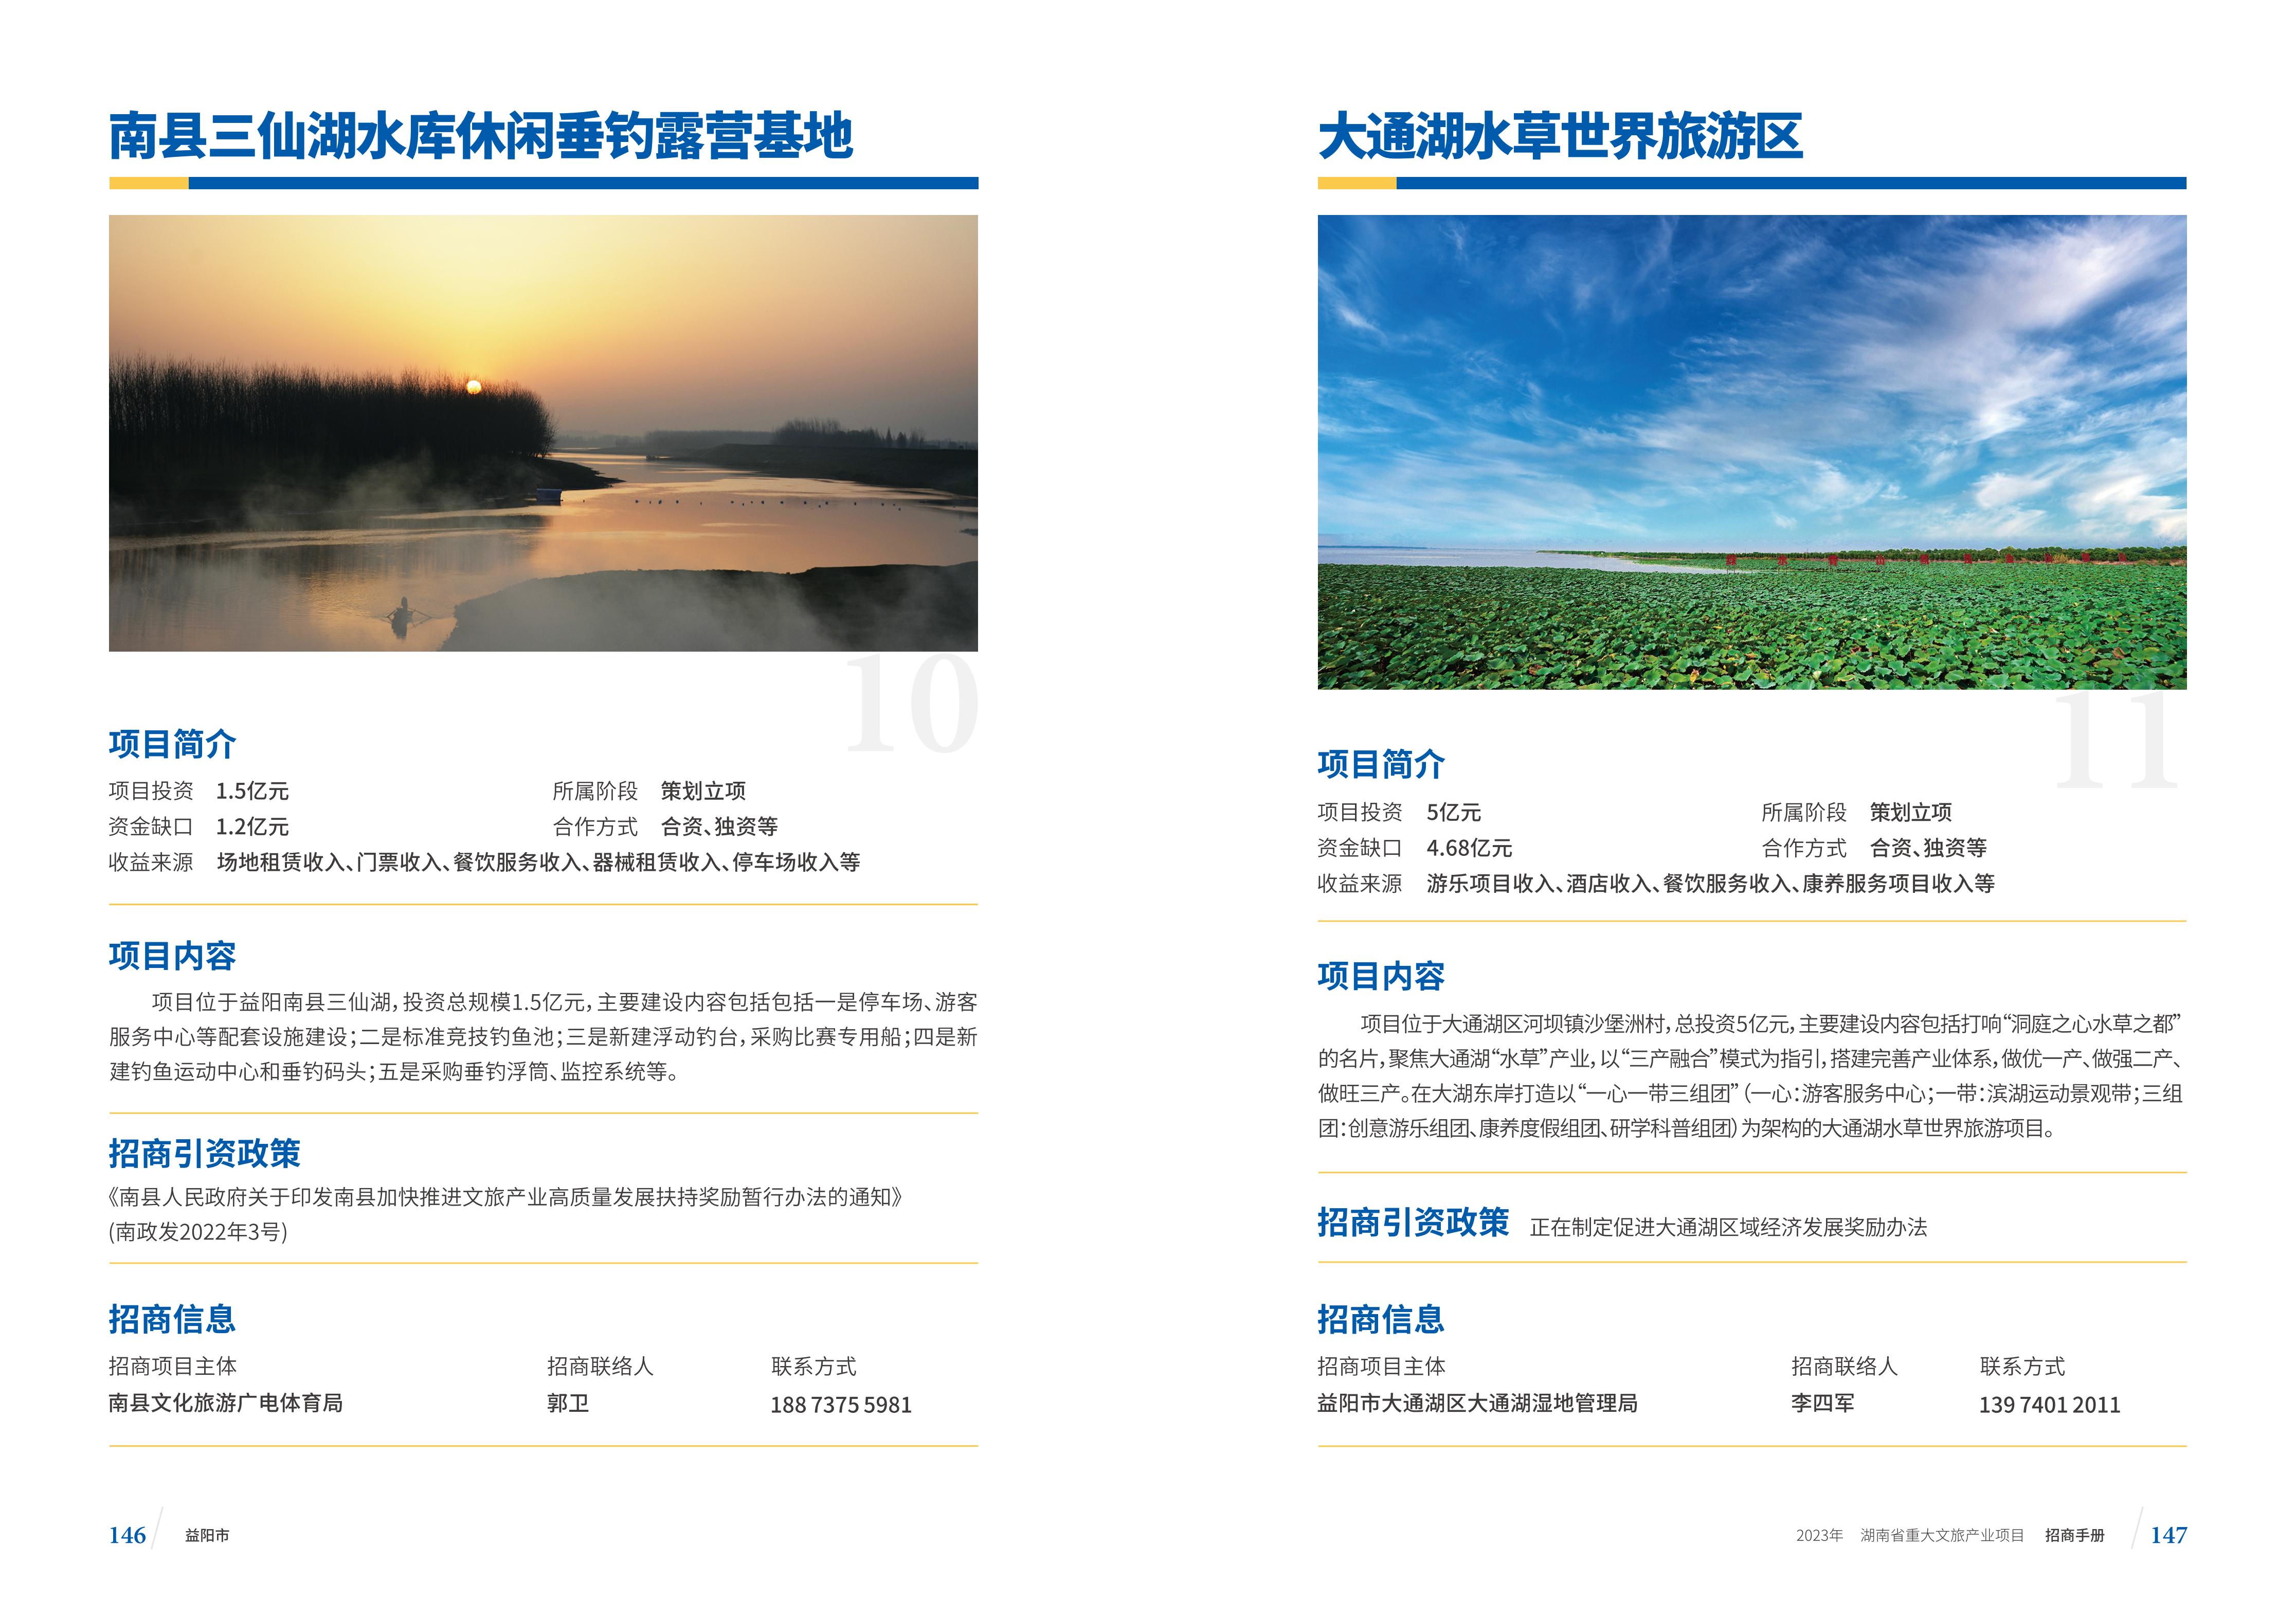 湖南省重大文旅产业项目招手册线上链接版_81.jpg